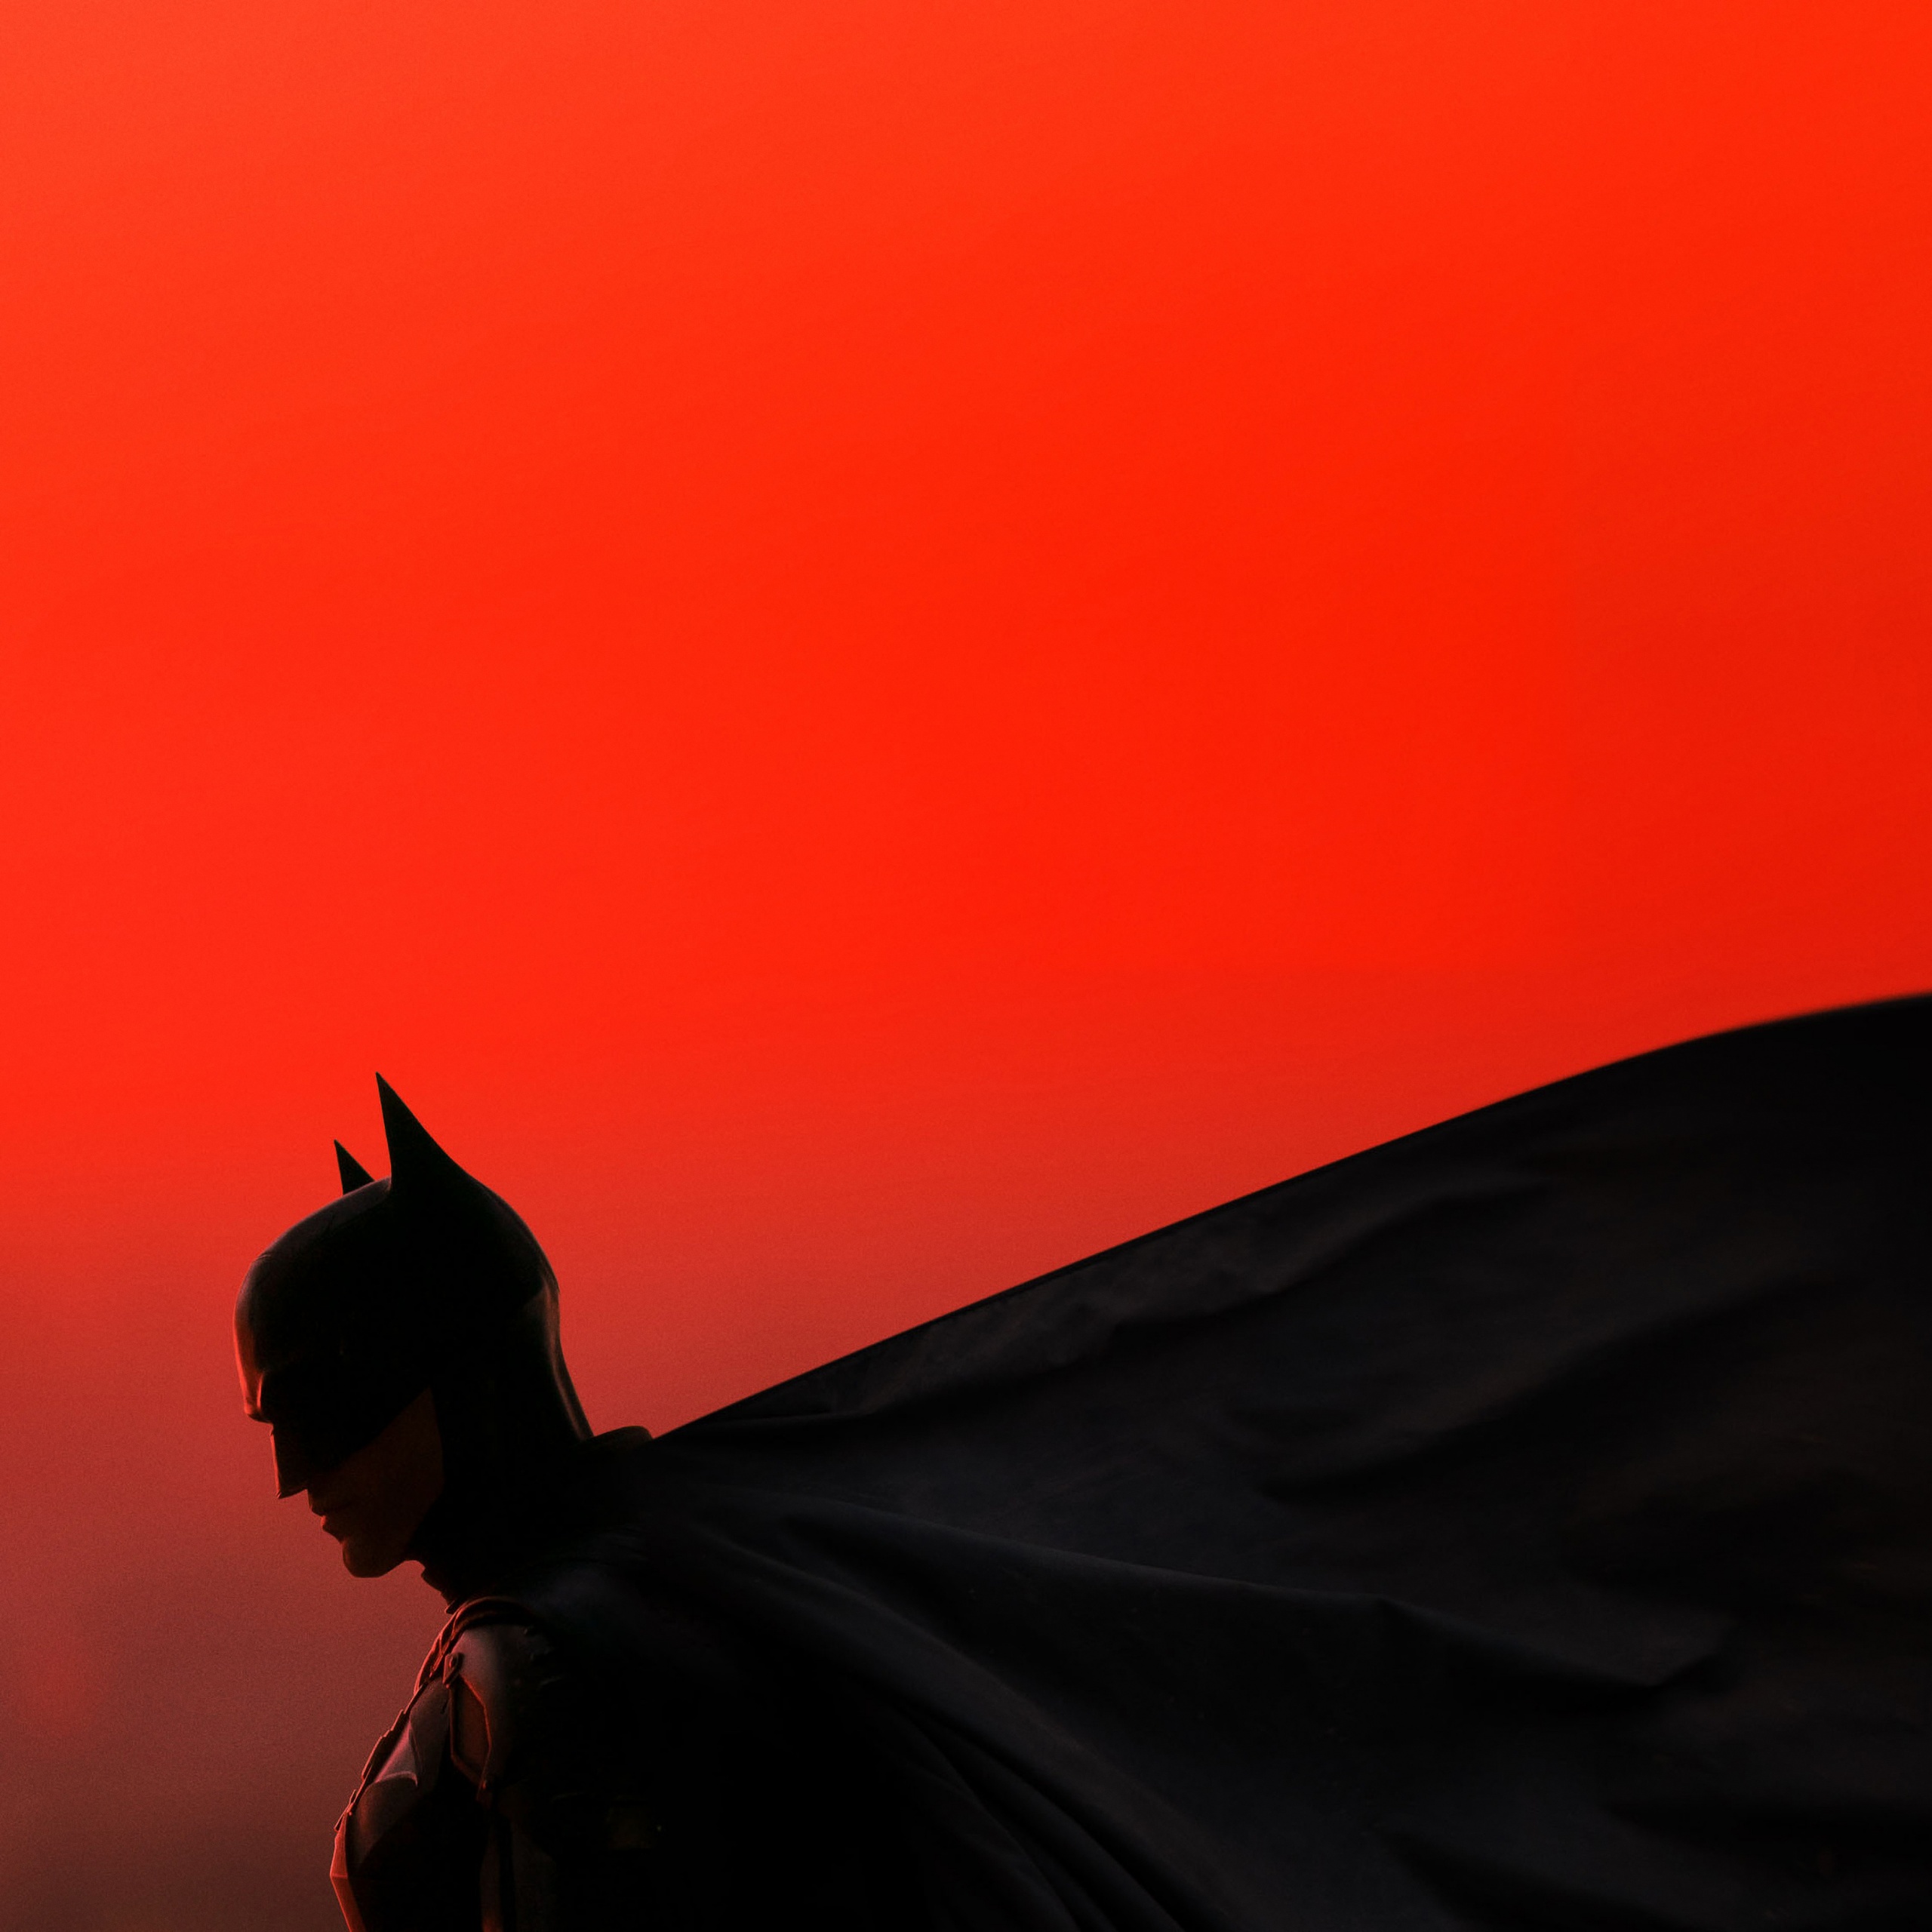 Batman: Bạn đã sẵn sàng trải nghiệm cuộc phiêu lưu đầy gây cấn cùng với Người dơi - siêu anh hùng thành phố Gotham? Hãy xem Batman đối mặt với kẻ thù ác độc nhất, đấu tranh cho sự công bằng và giải cứu thành phố khỏi tội ác.